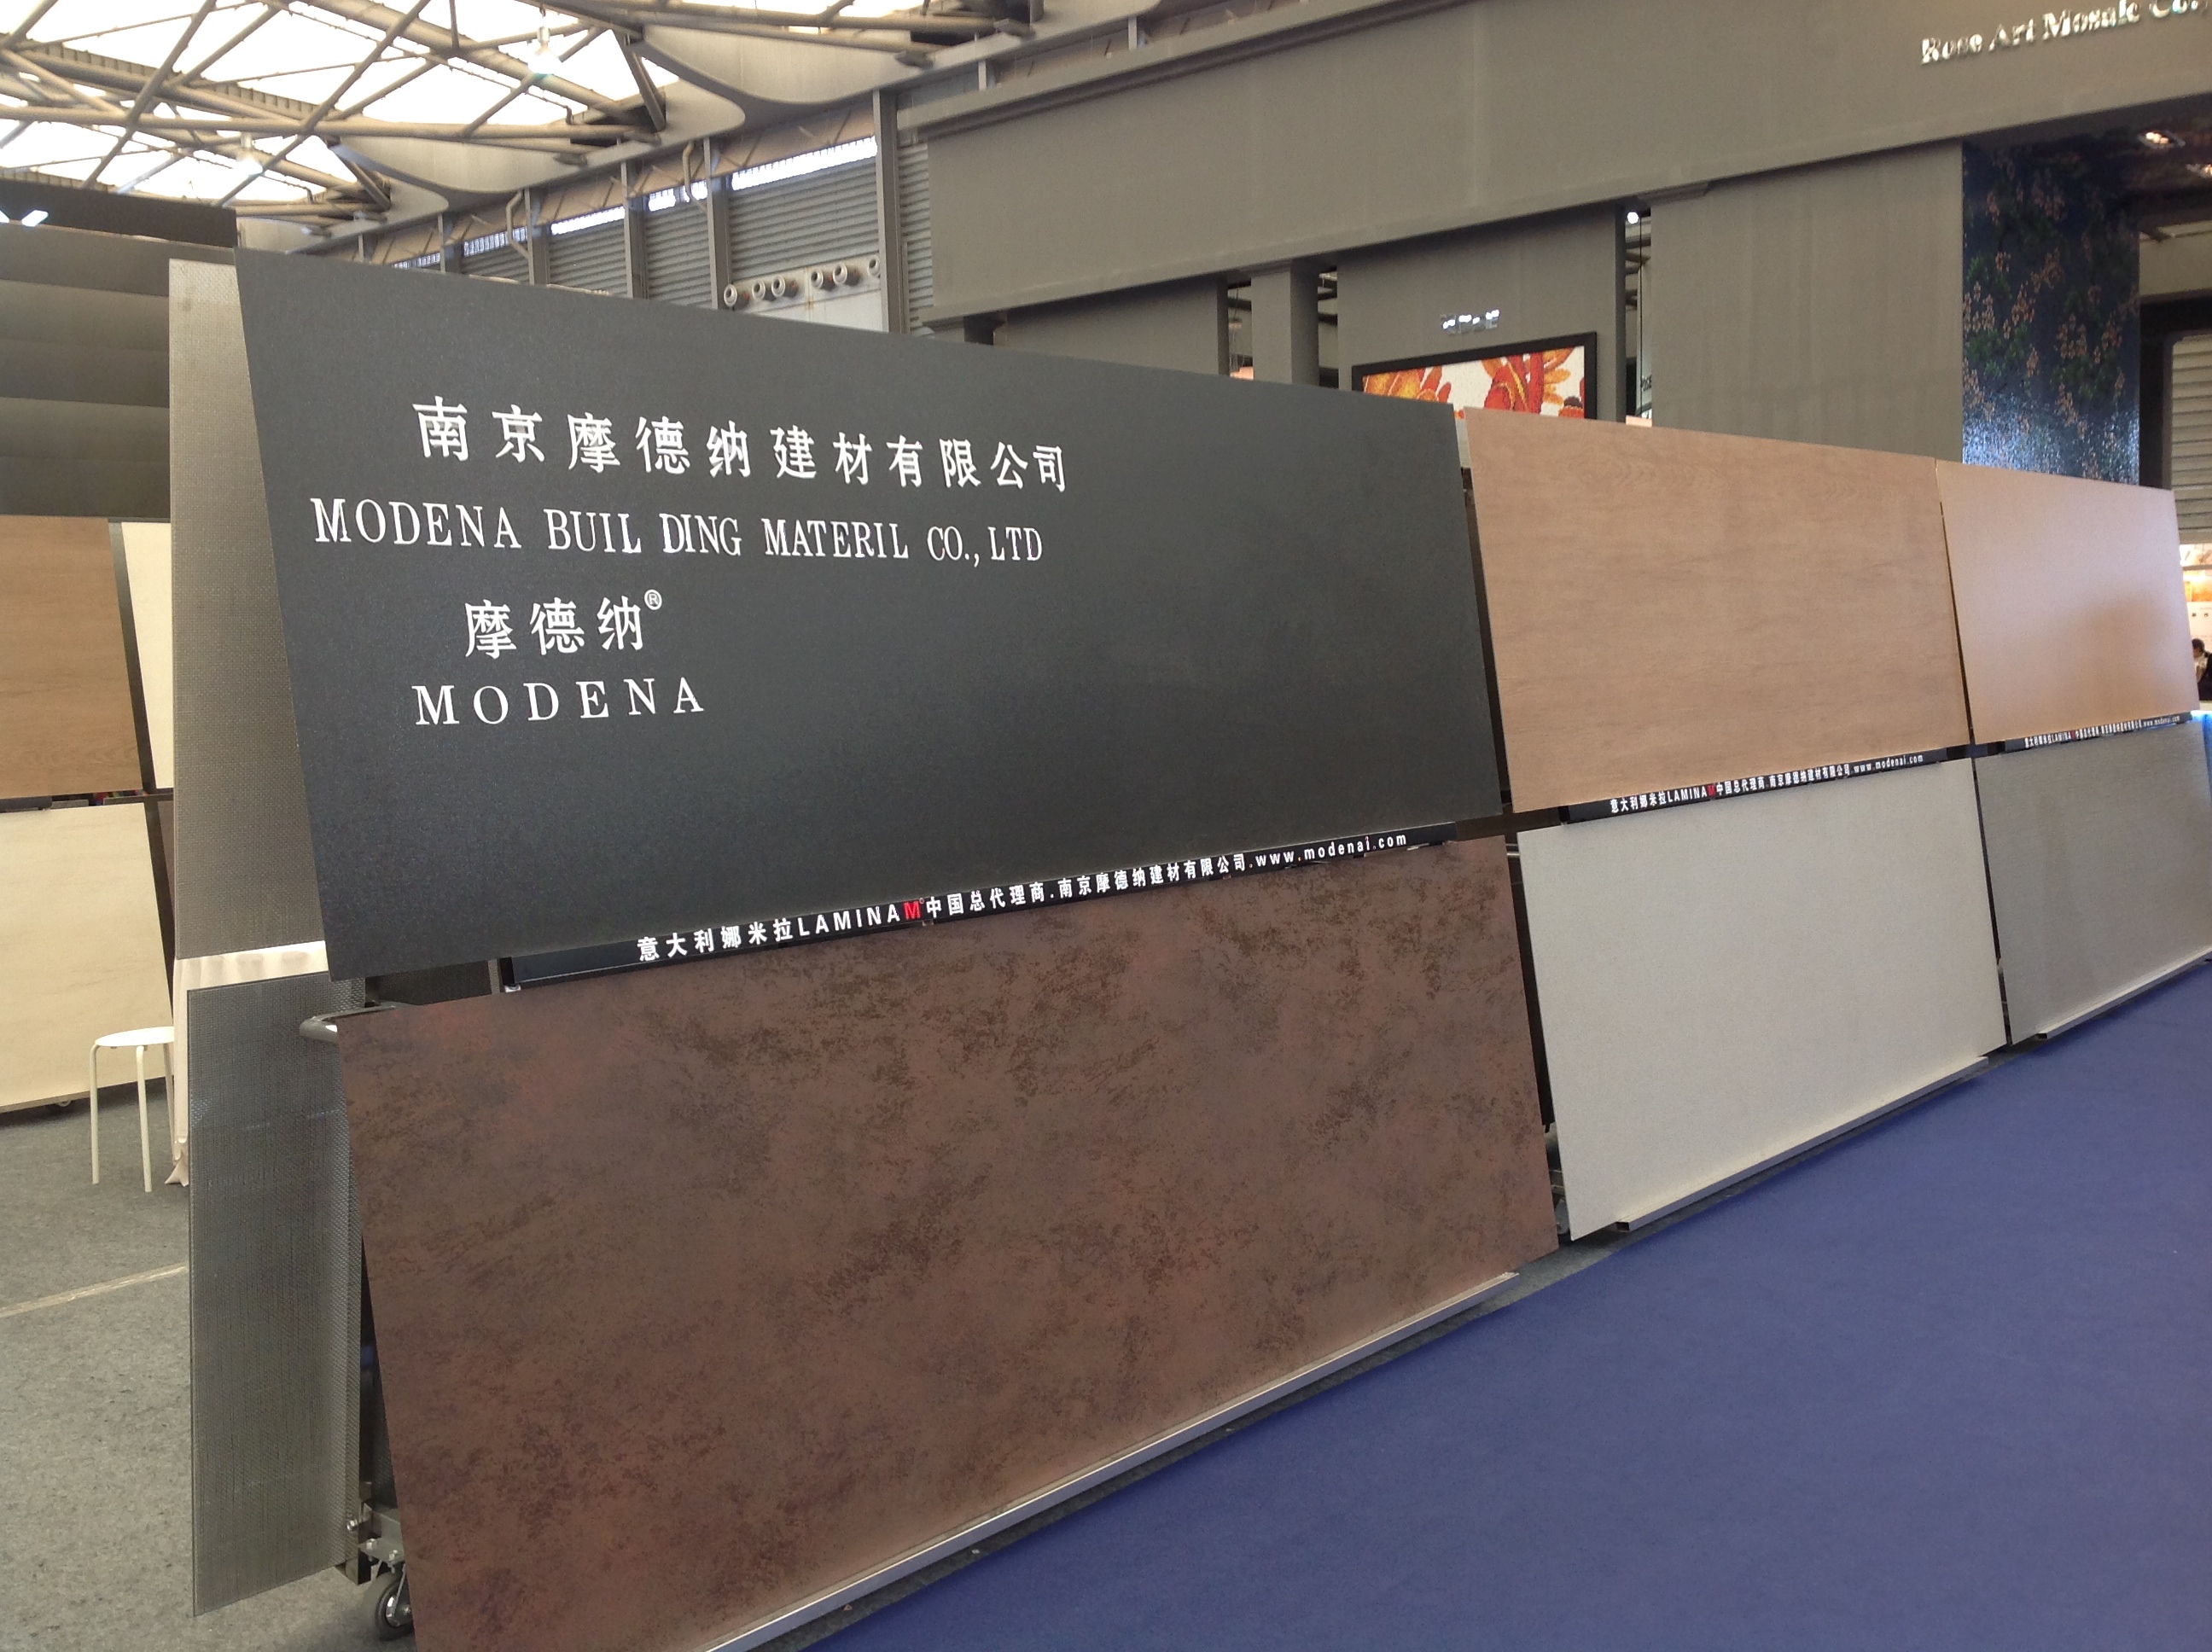 2014年3.31-4.3上海建材展会娜米拉展馆现场实况